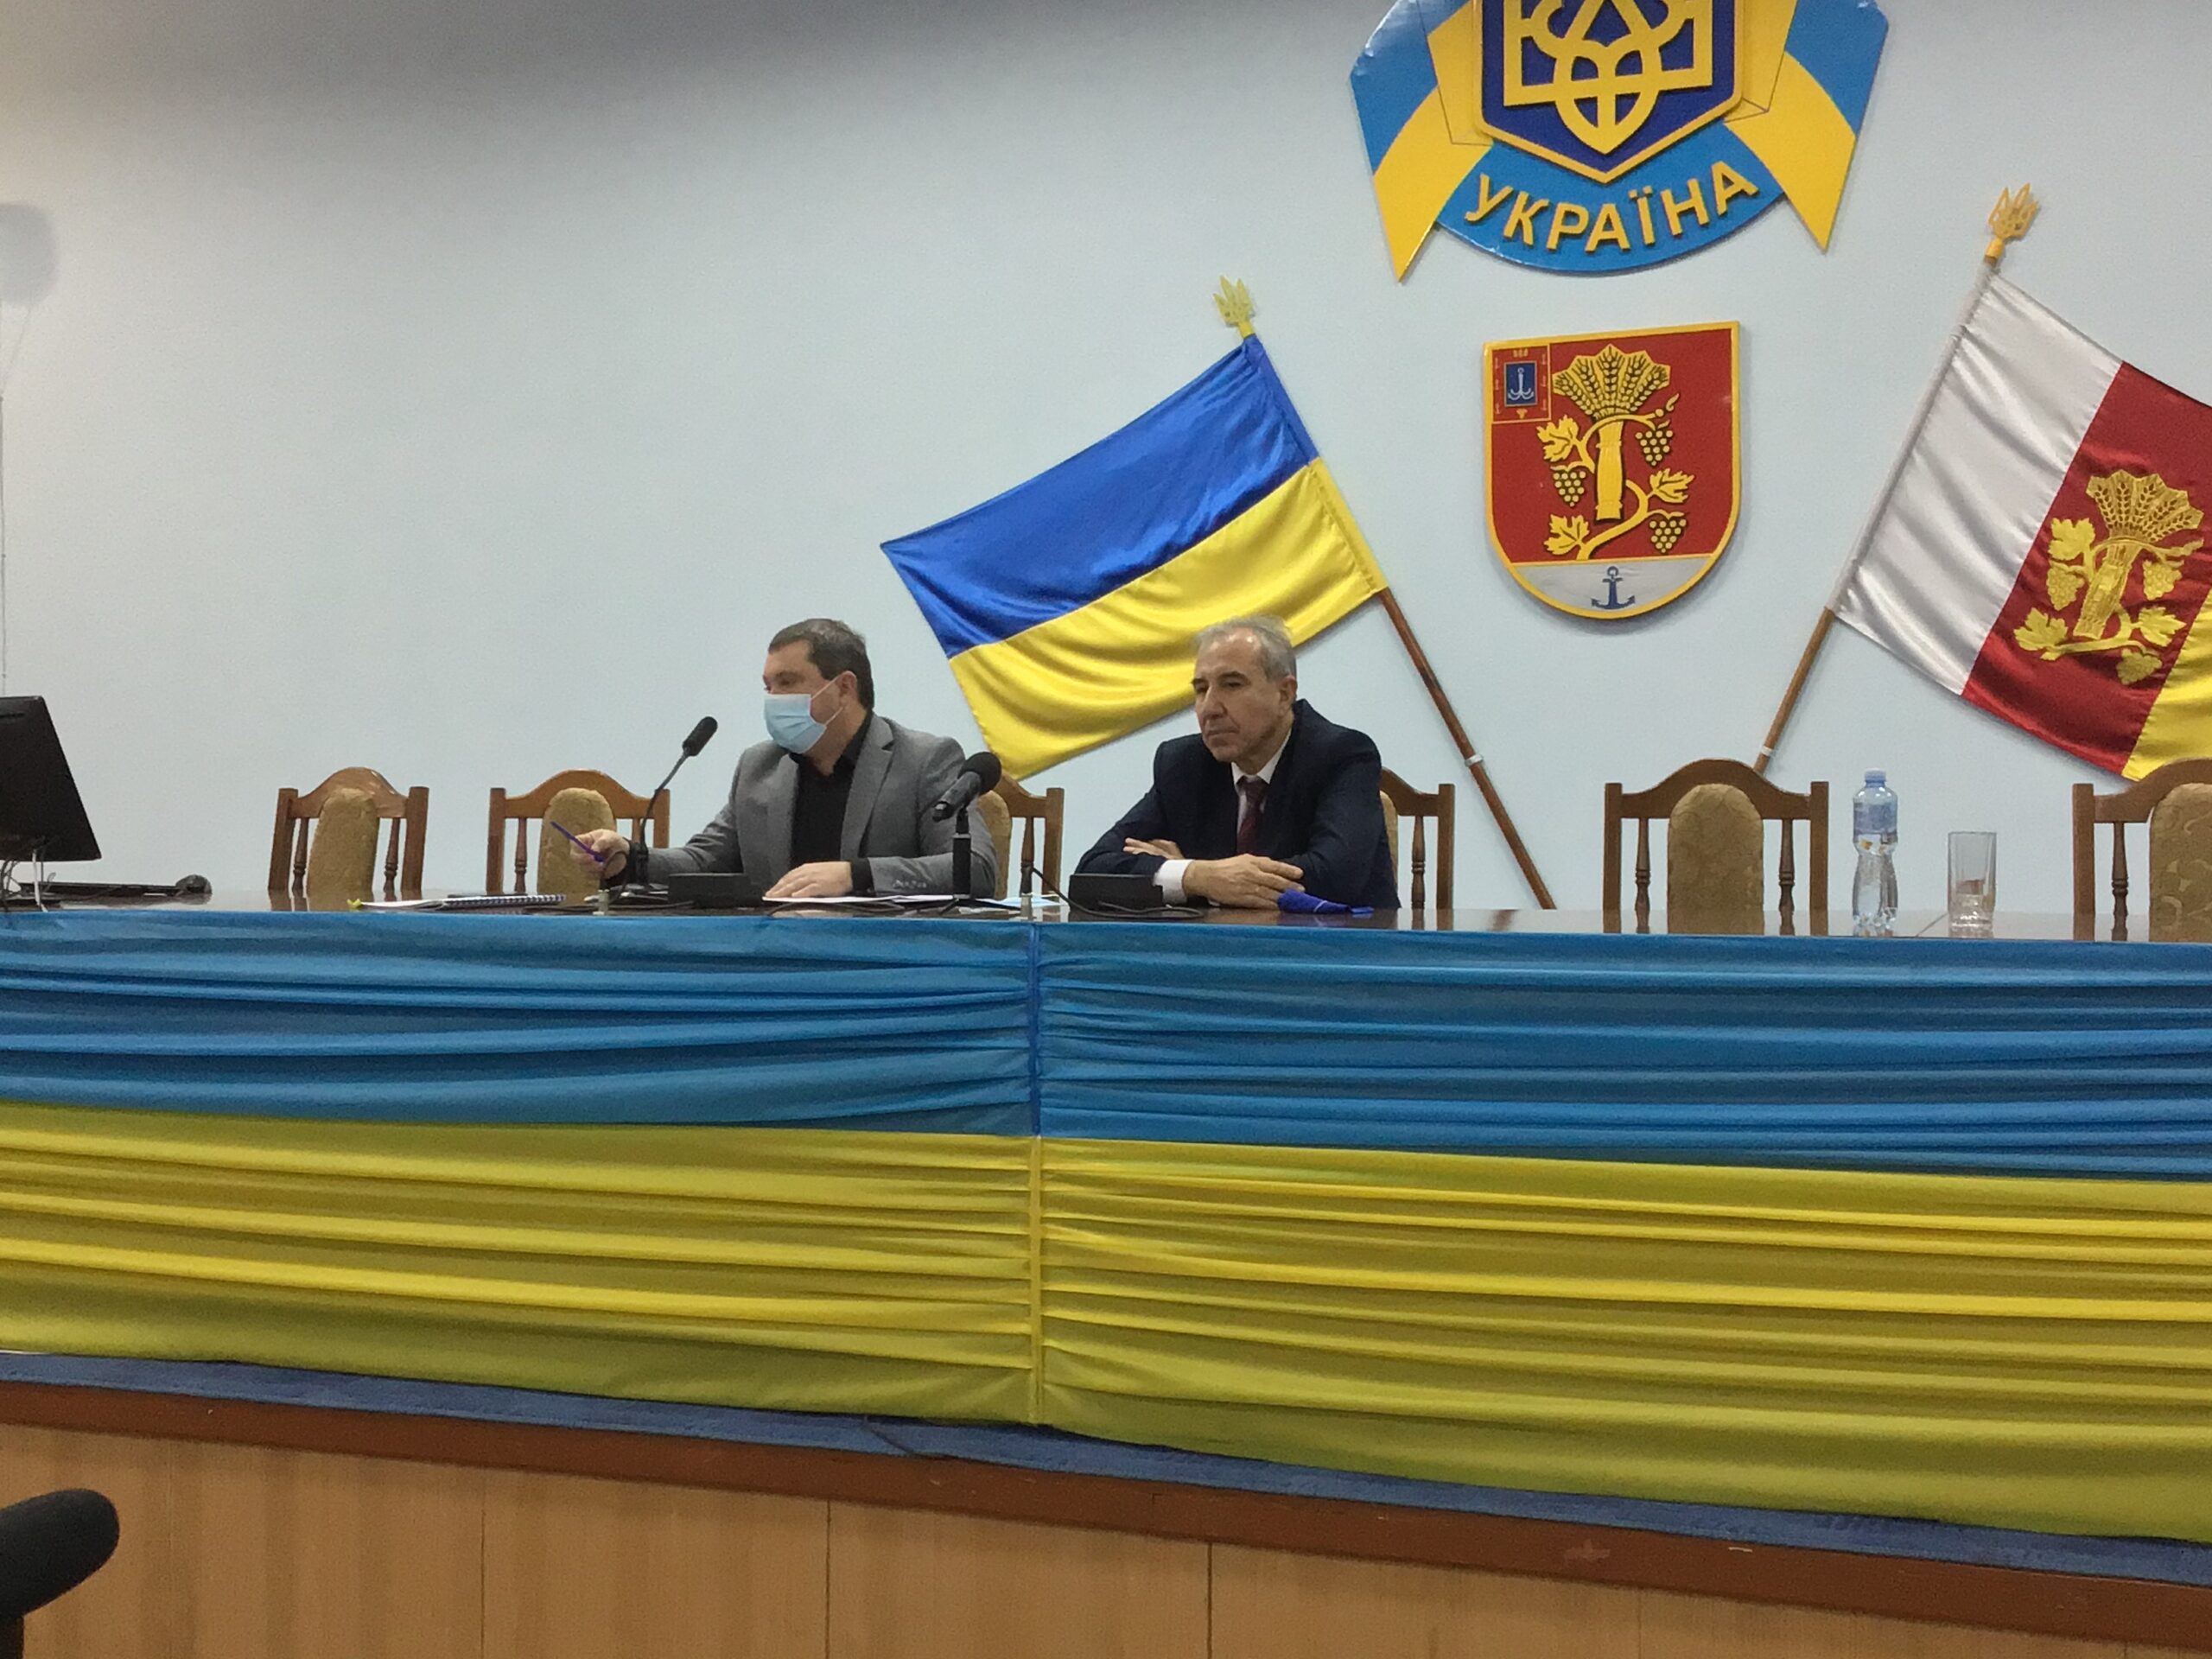 Первая сессия комом: новоизбранные депутаты укрупненного Белгород-Днестровского района пытаясь договориться заседали до поздней ночи